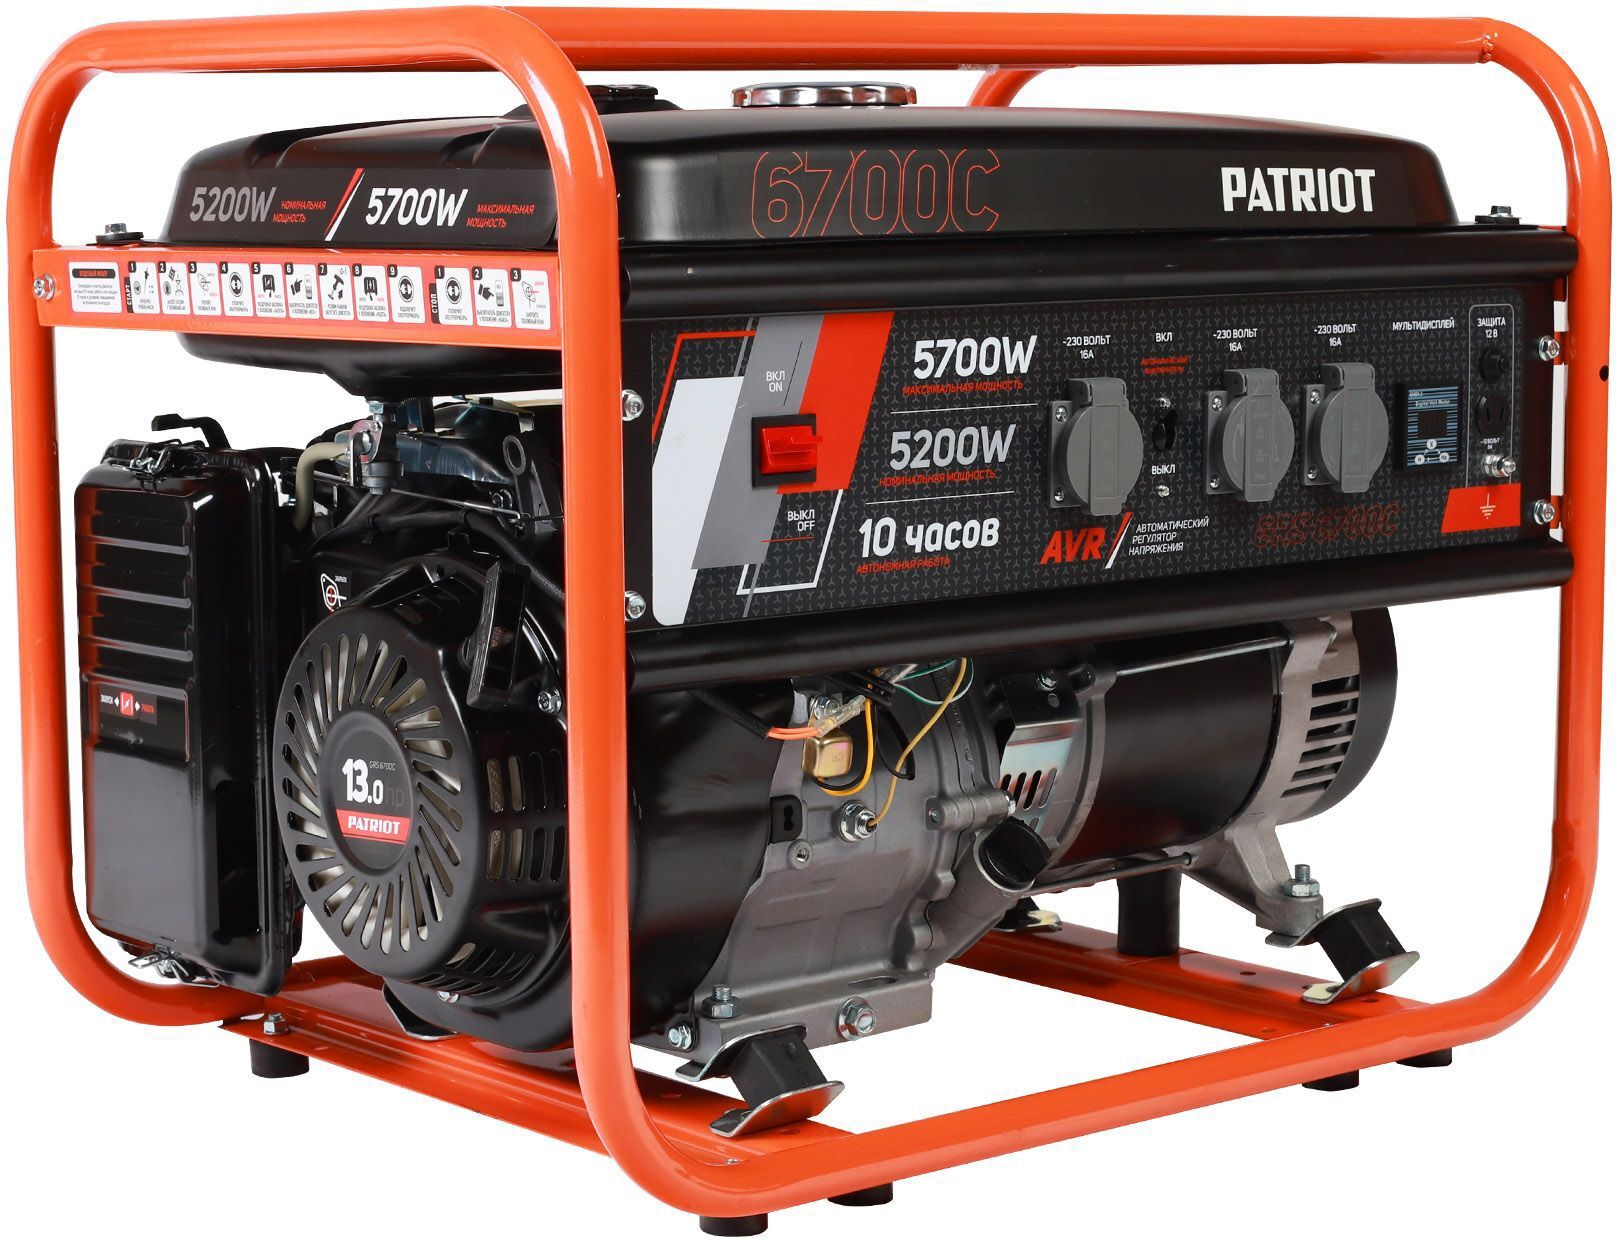  бензиновый Patriot GRS 6700C, 5.7 кВт по цене 48230 ₽/шт .